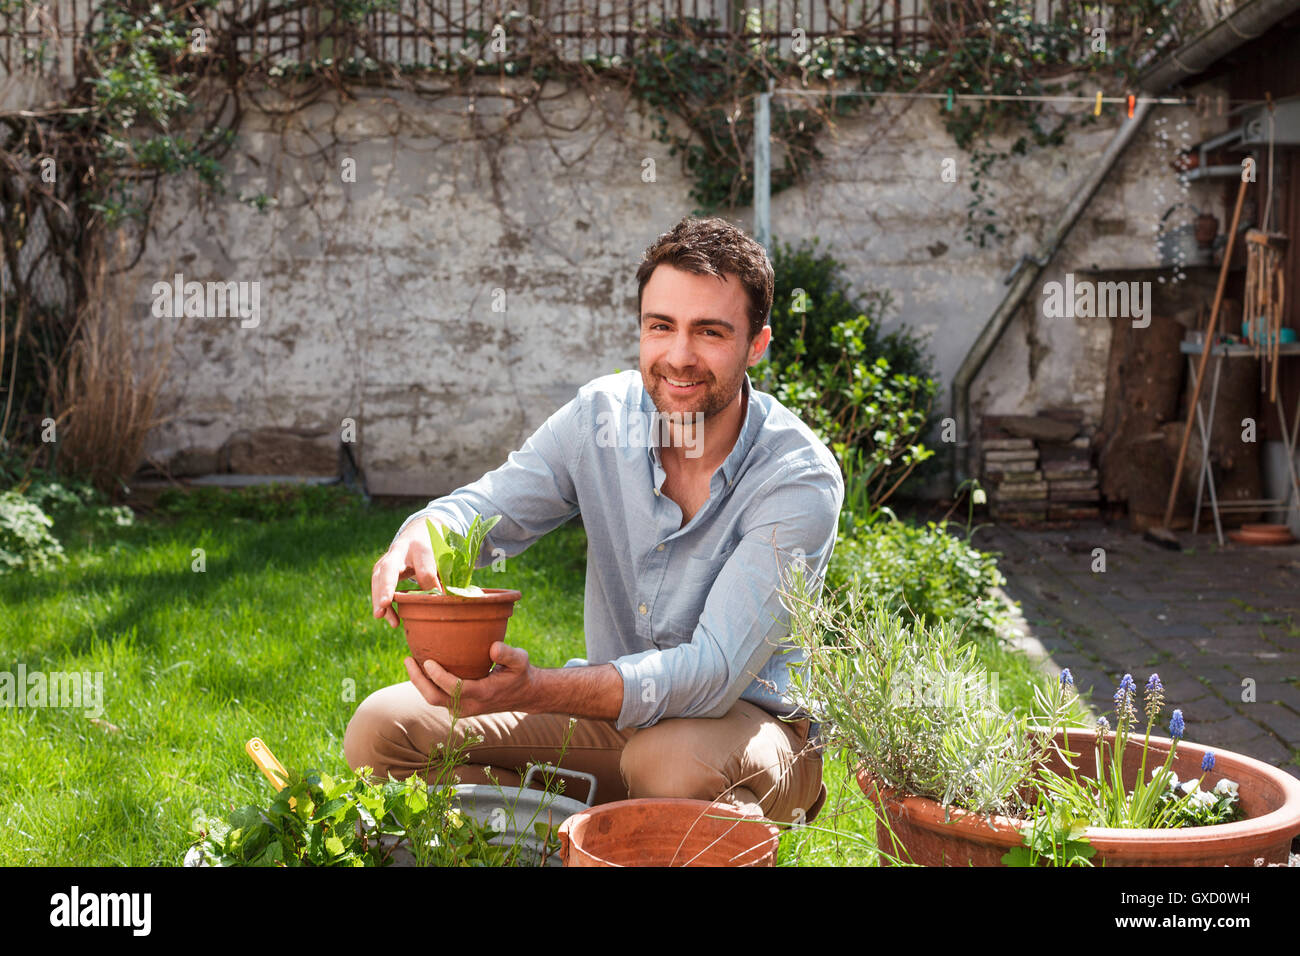 Man in garden tending to plants Stock Photo